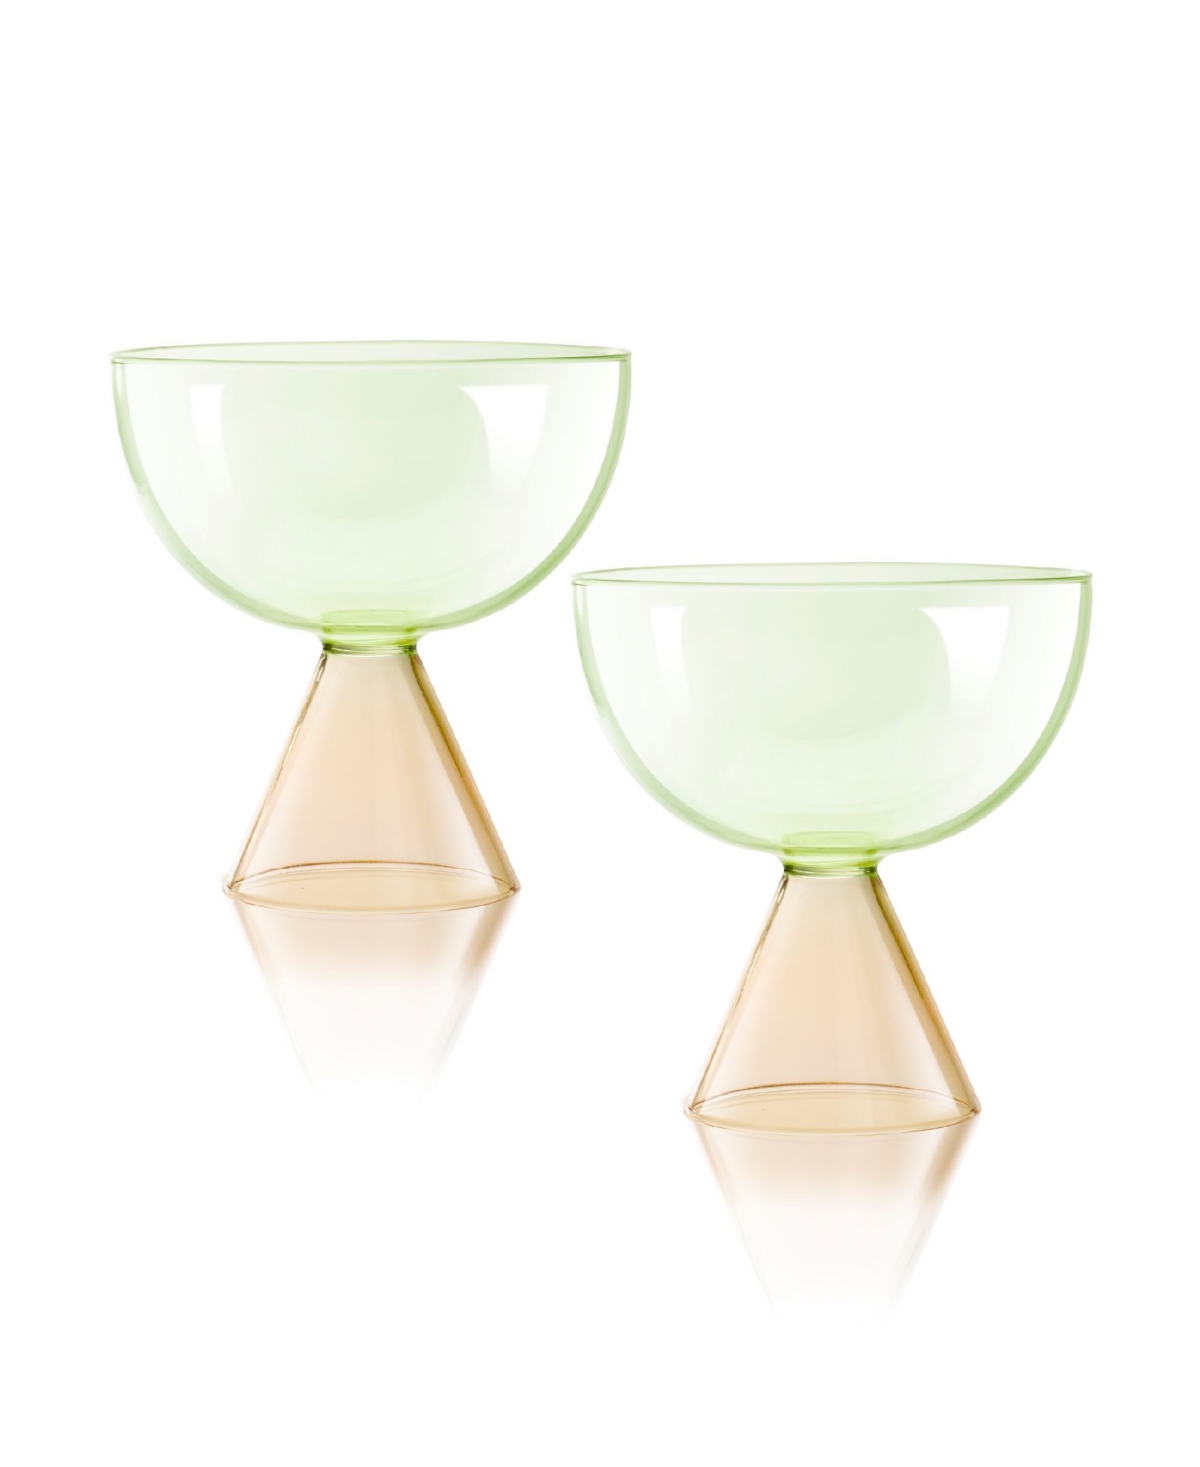 Qualia Glass Venice 18 oz Coupe, Dessert Glasses, Set Of 2 In Peach,green